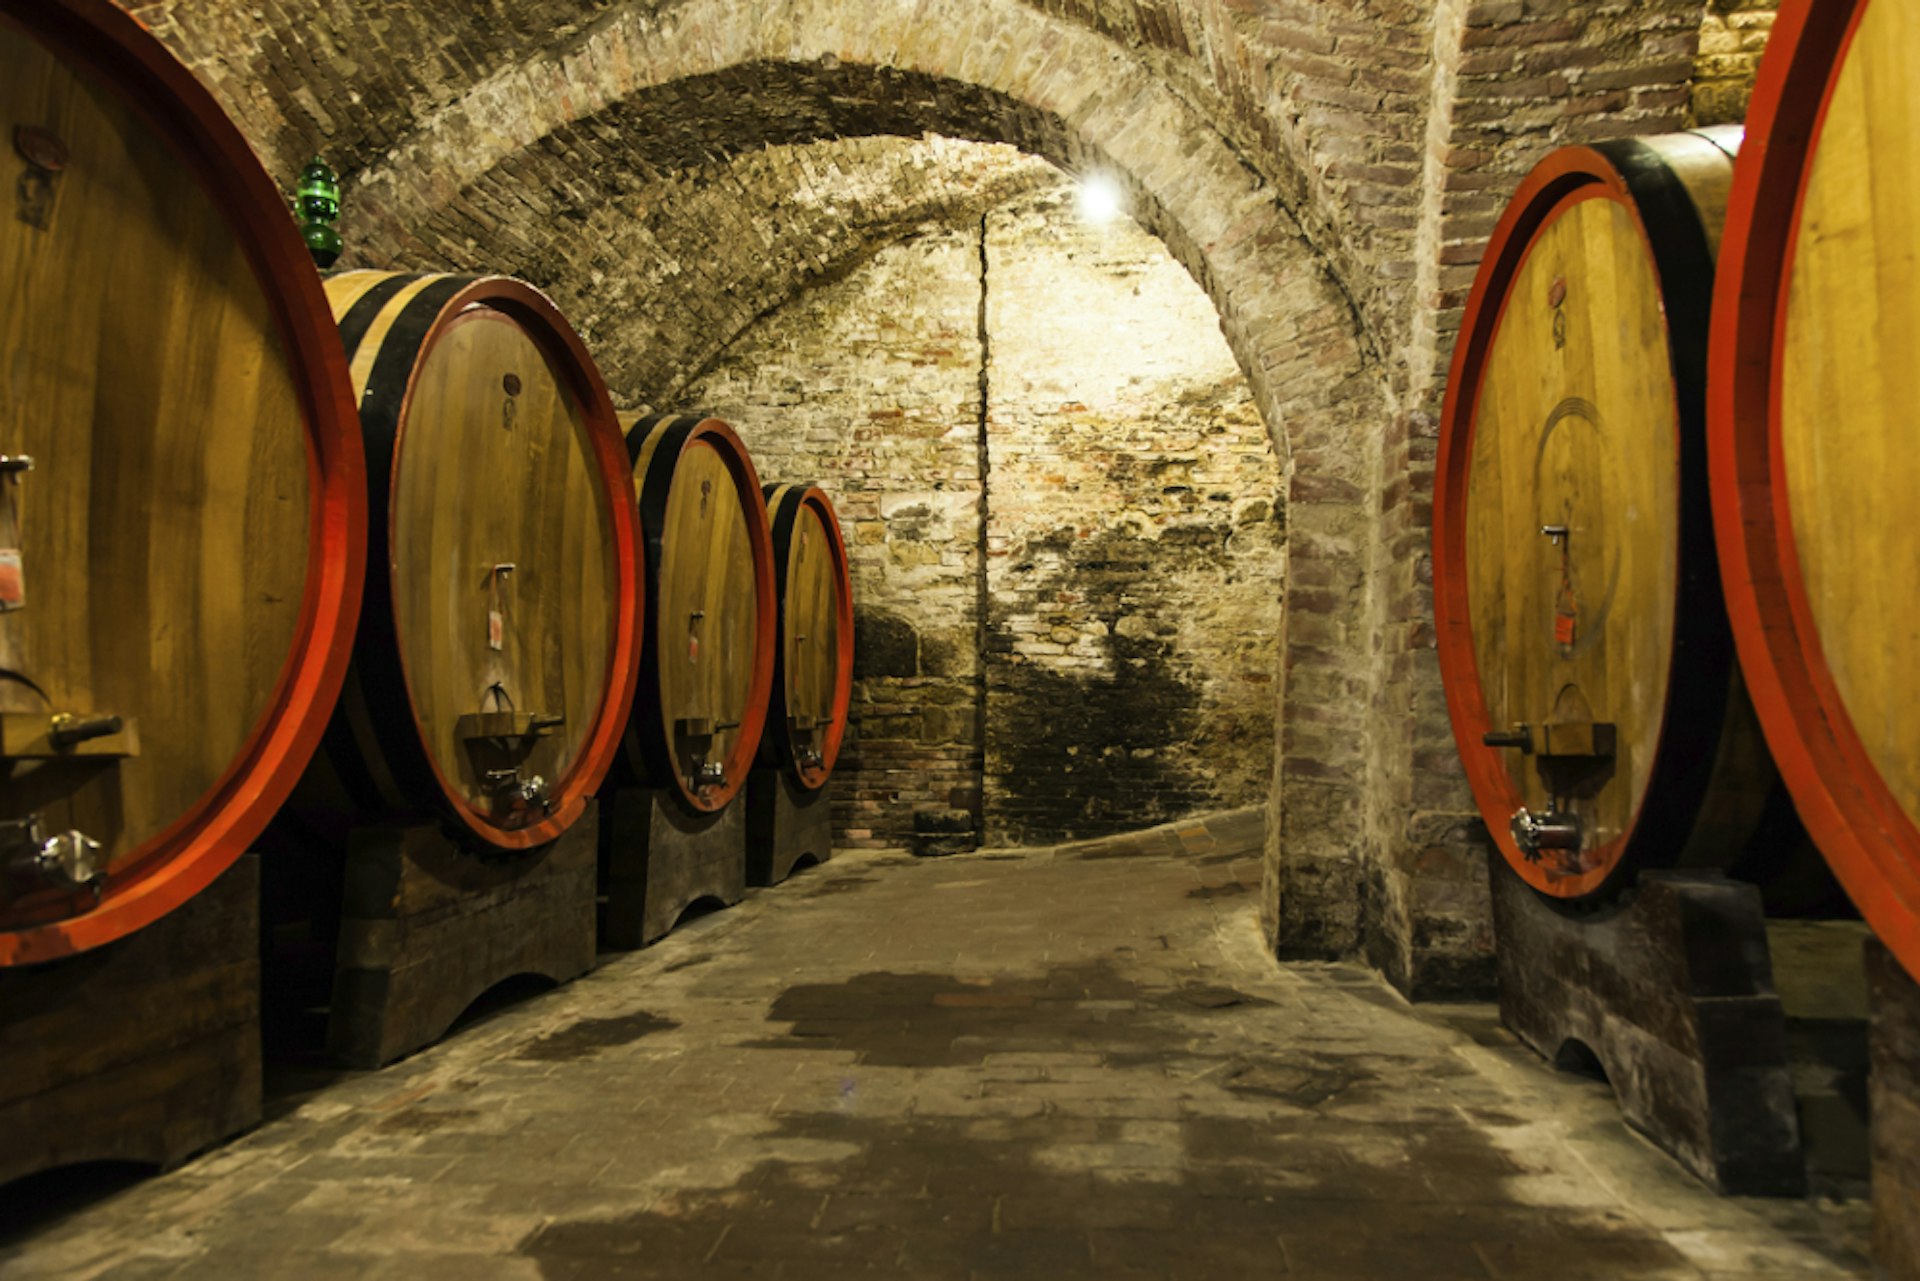 Wine being aged in oak barrels in Tuscany. 